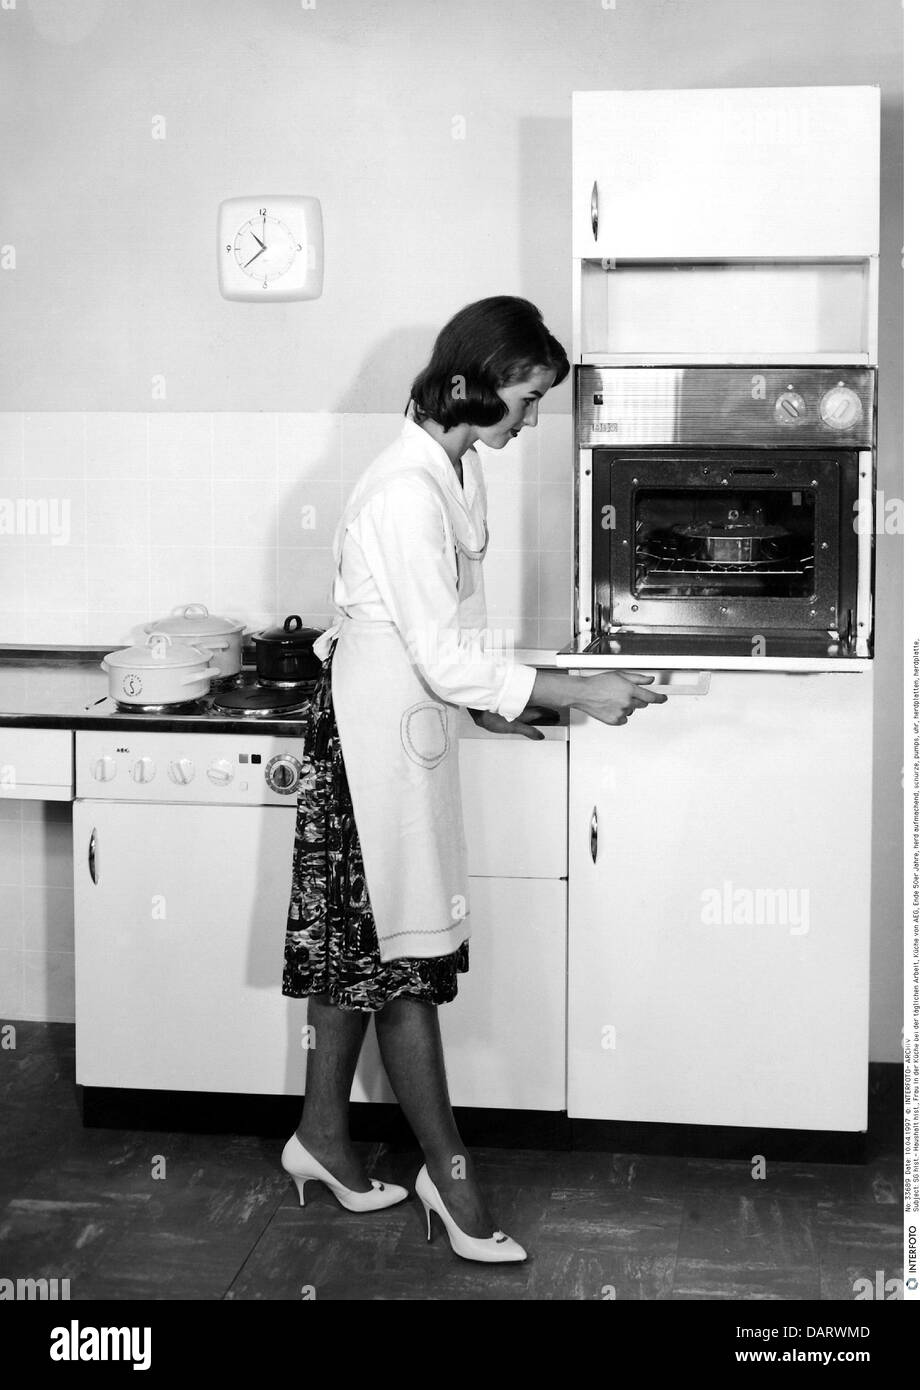 Maison, cuisine et ustensiles de cuisine, femme au foyer pendant son travail quotidien dans la cuisine AEG, fin des années 1950, , droits supplémentaires-Clearences-non disponible Banque D'Images